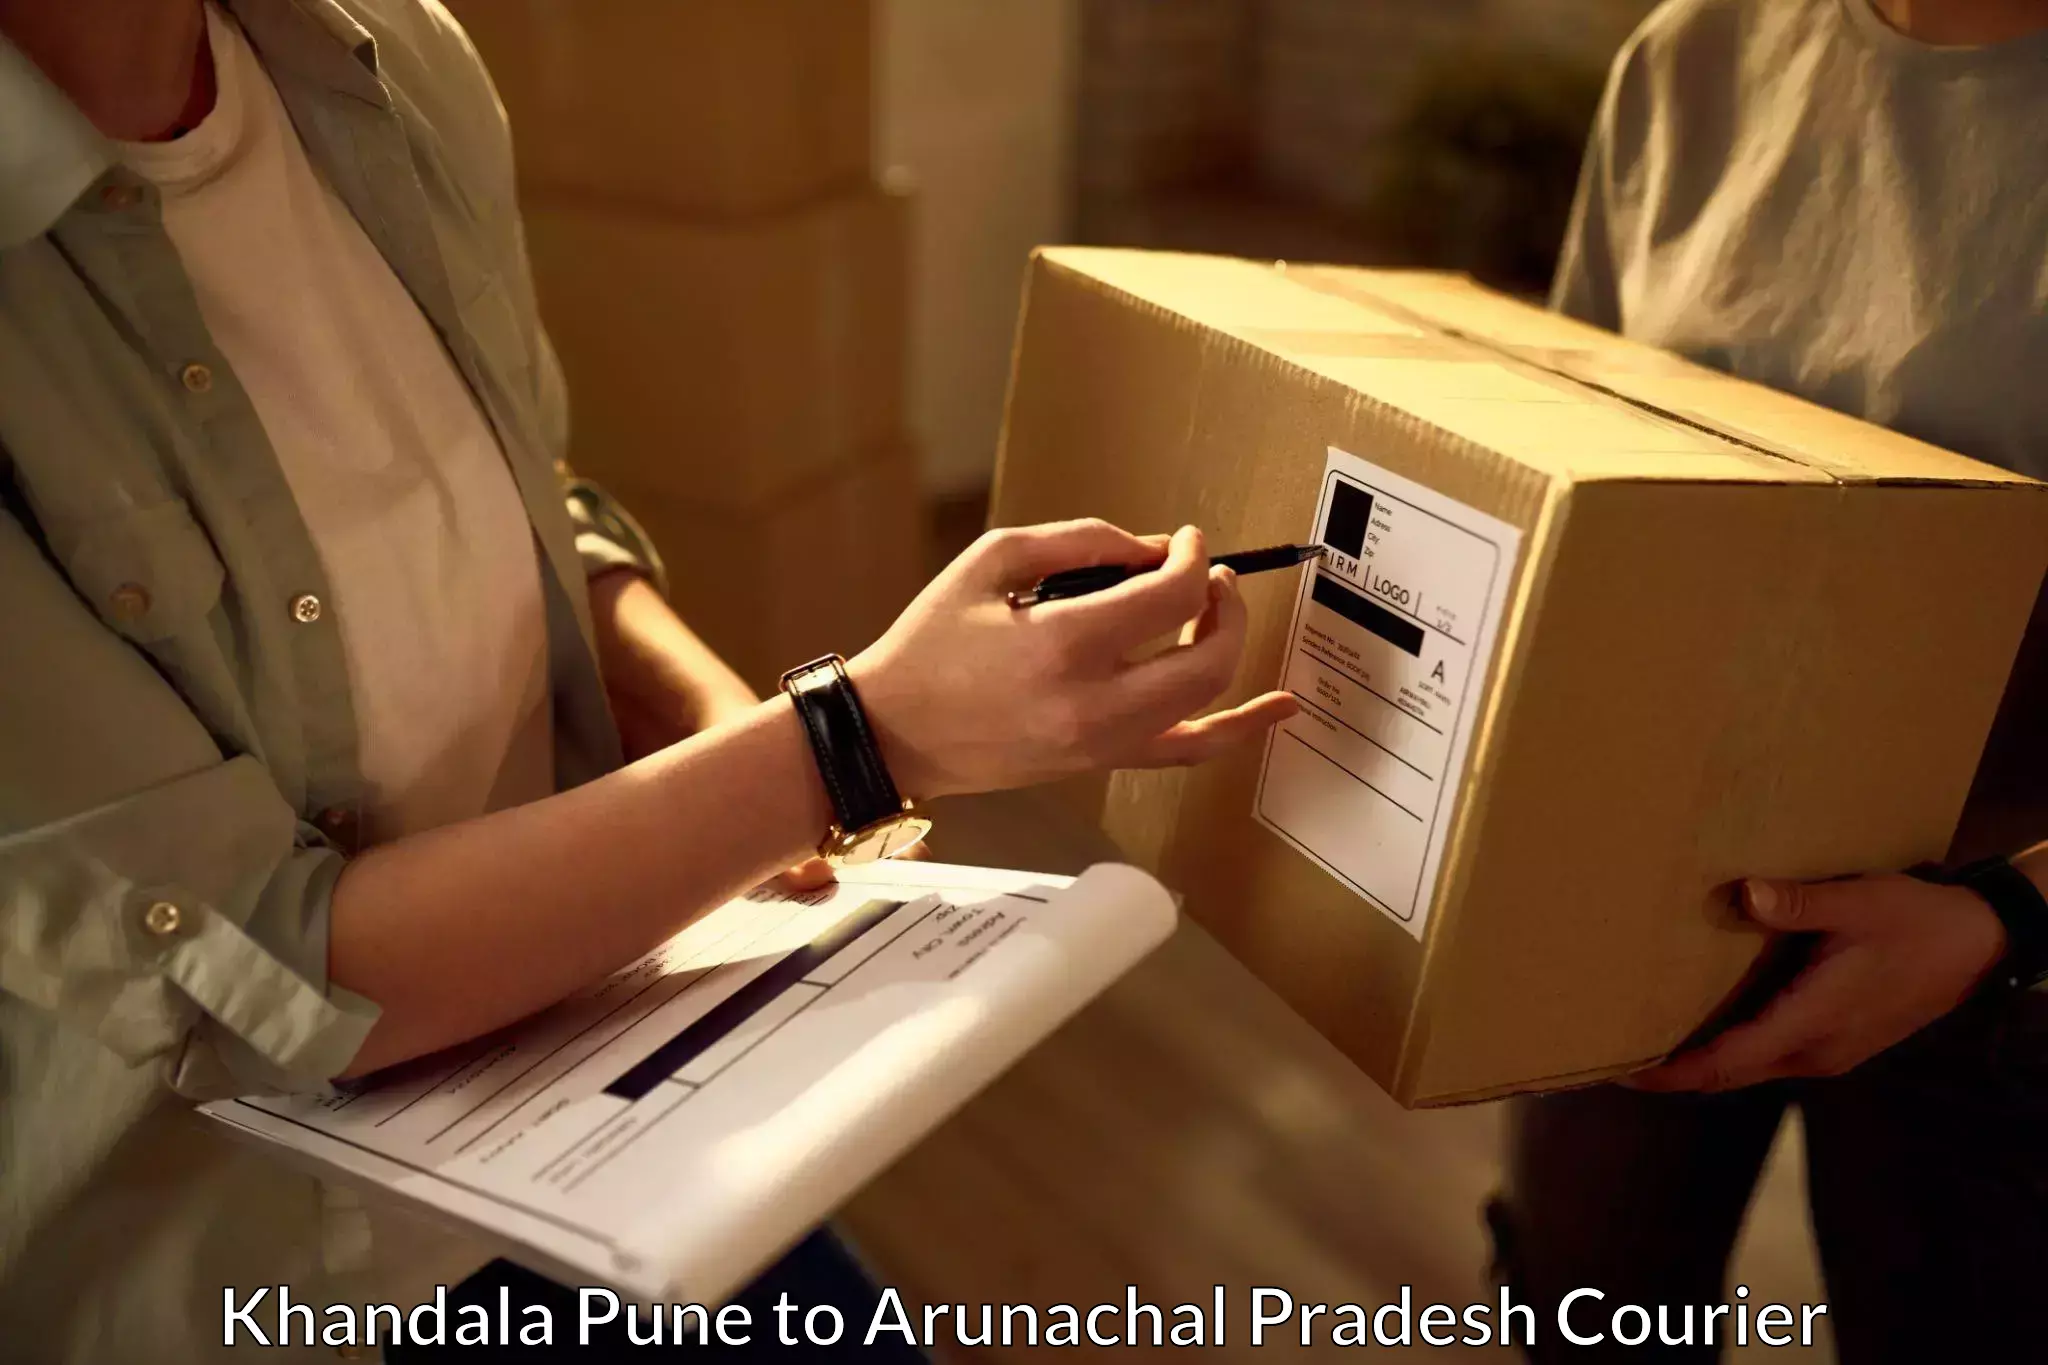 Express postal services Khandala Pune to Arunachal Pradesh